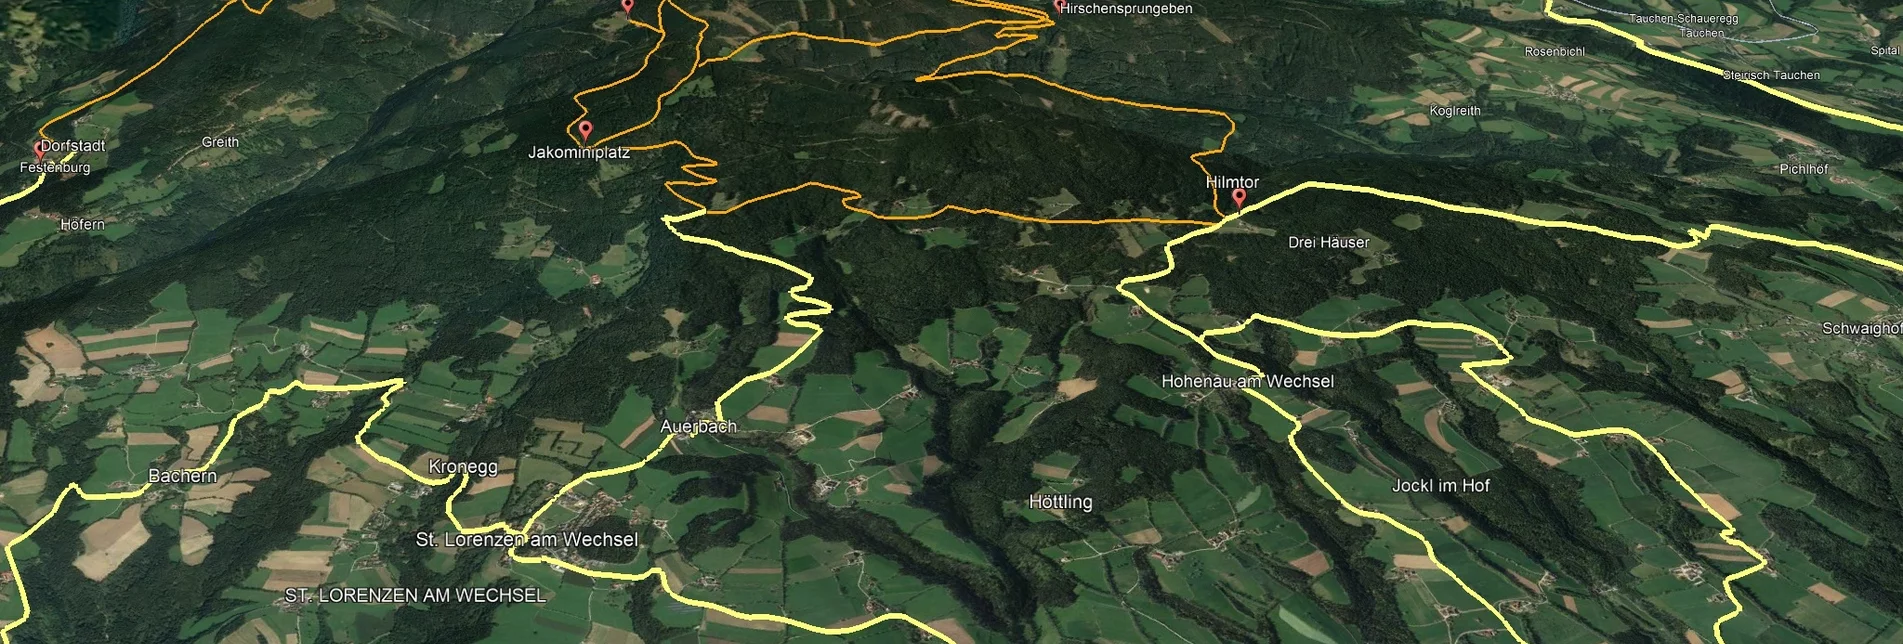 Mountainbike VORSCHAU Steirische Wexl Trails - Dorfstatt Route - Touren-Impression #1 | © Verein Tourismusentwicklung Steirischer Wechsel